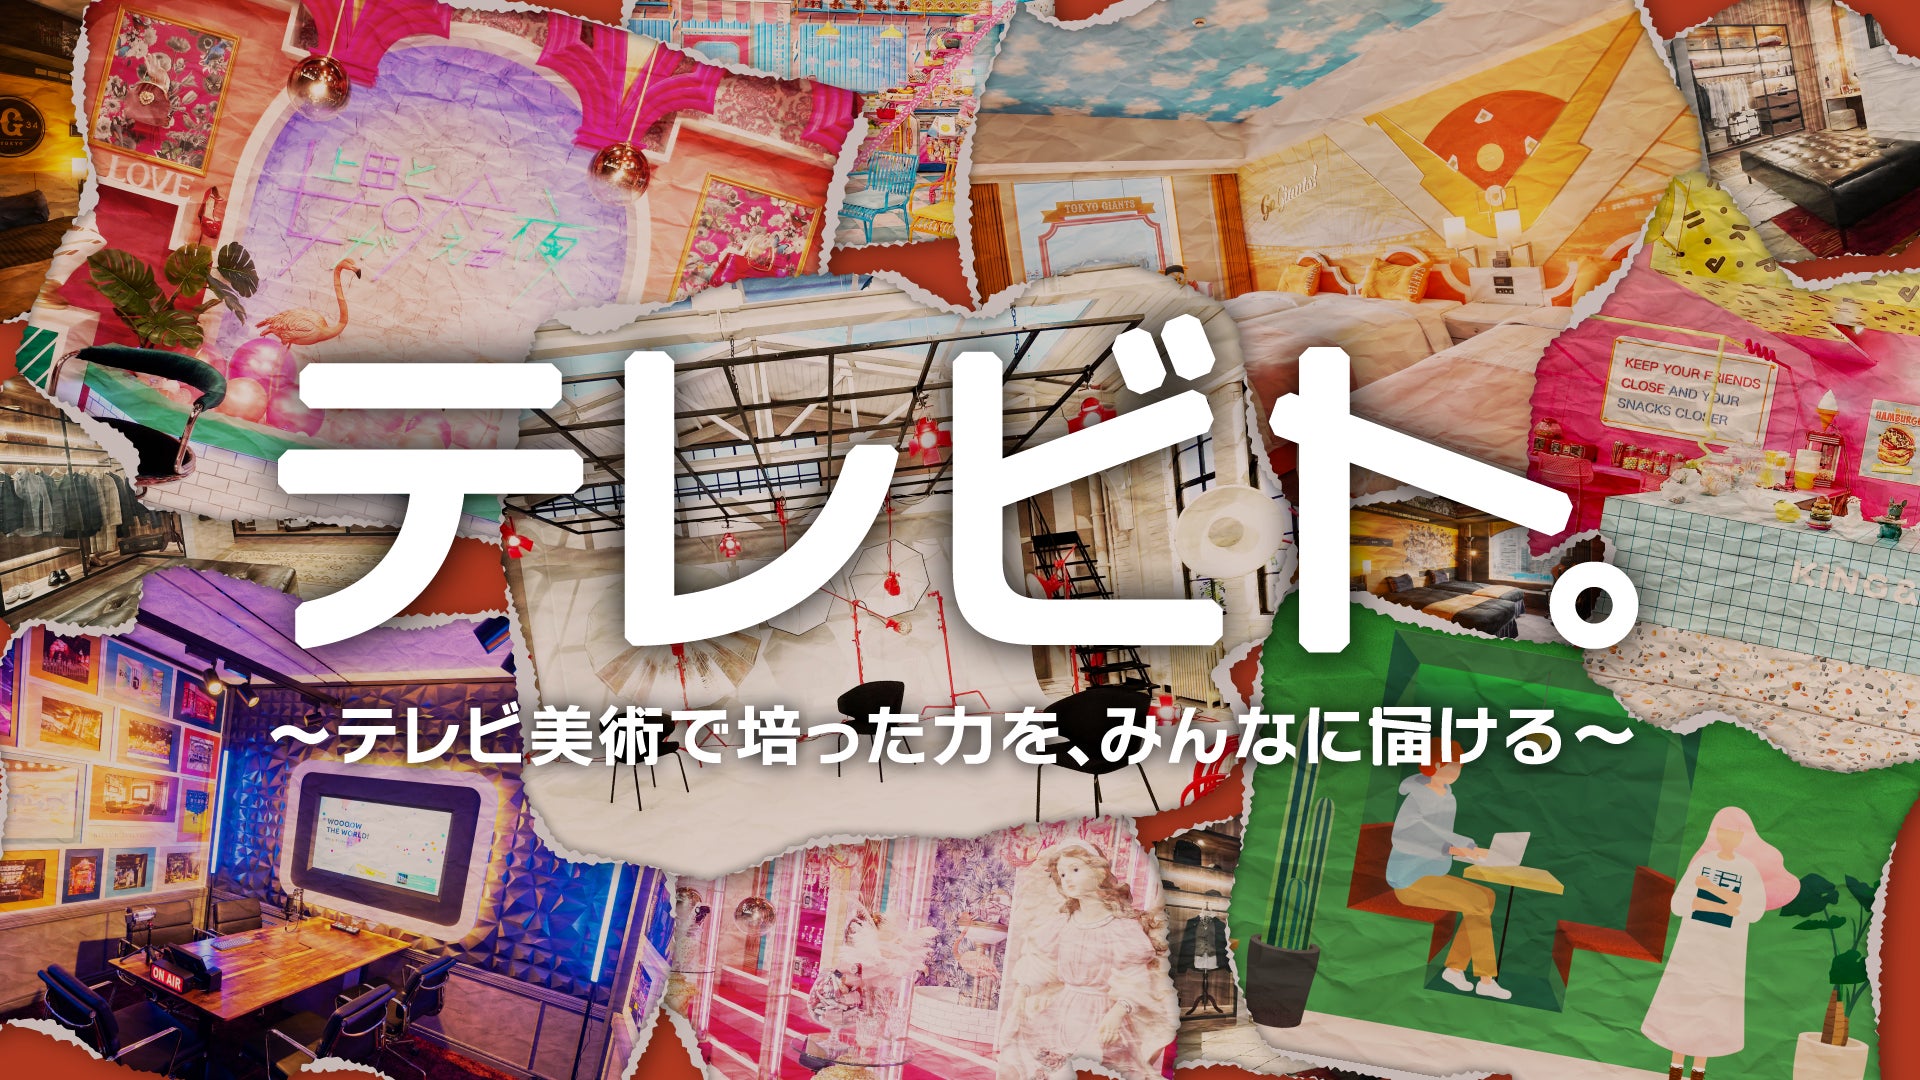 テレビ番組の美術を支えてきたクリエイティブ集団「日本テレビアート」がテレビ番組制作で培ったデザイン知識・技術を公開！新プロジェクト「テレビト。」を発足